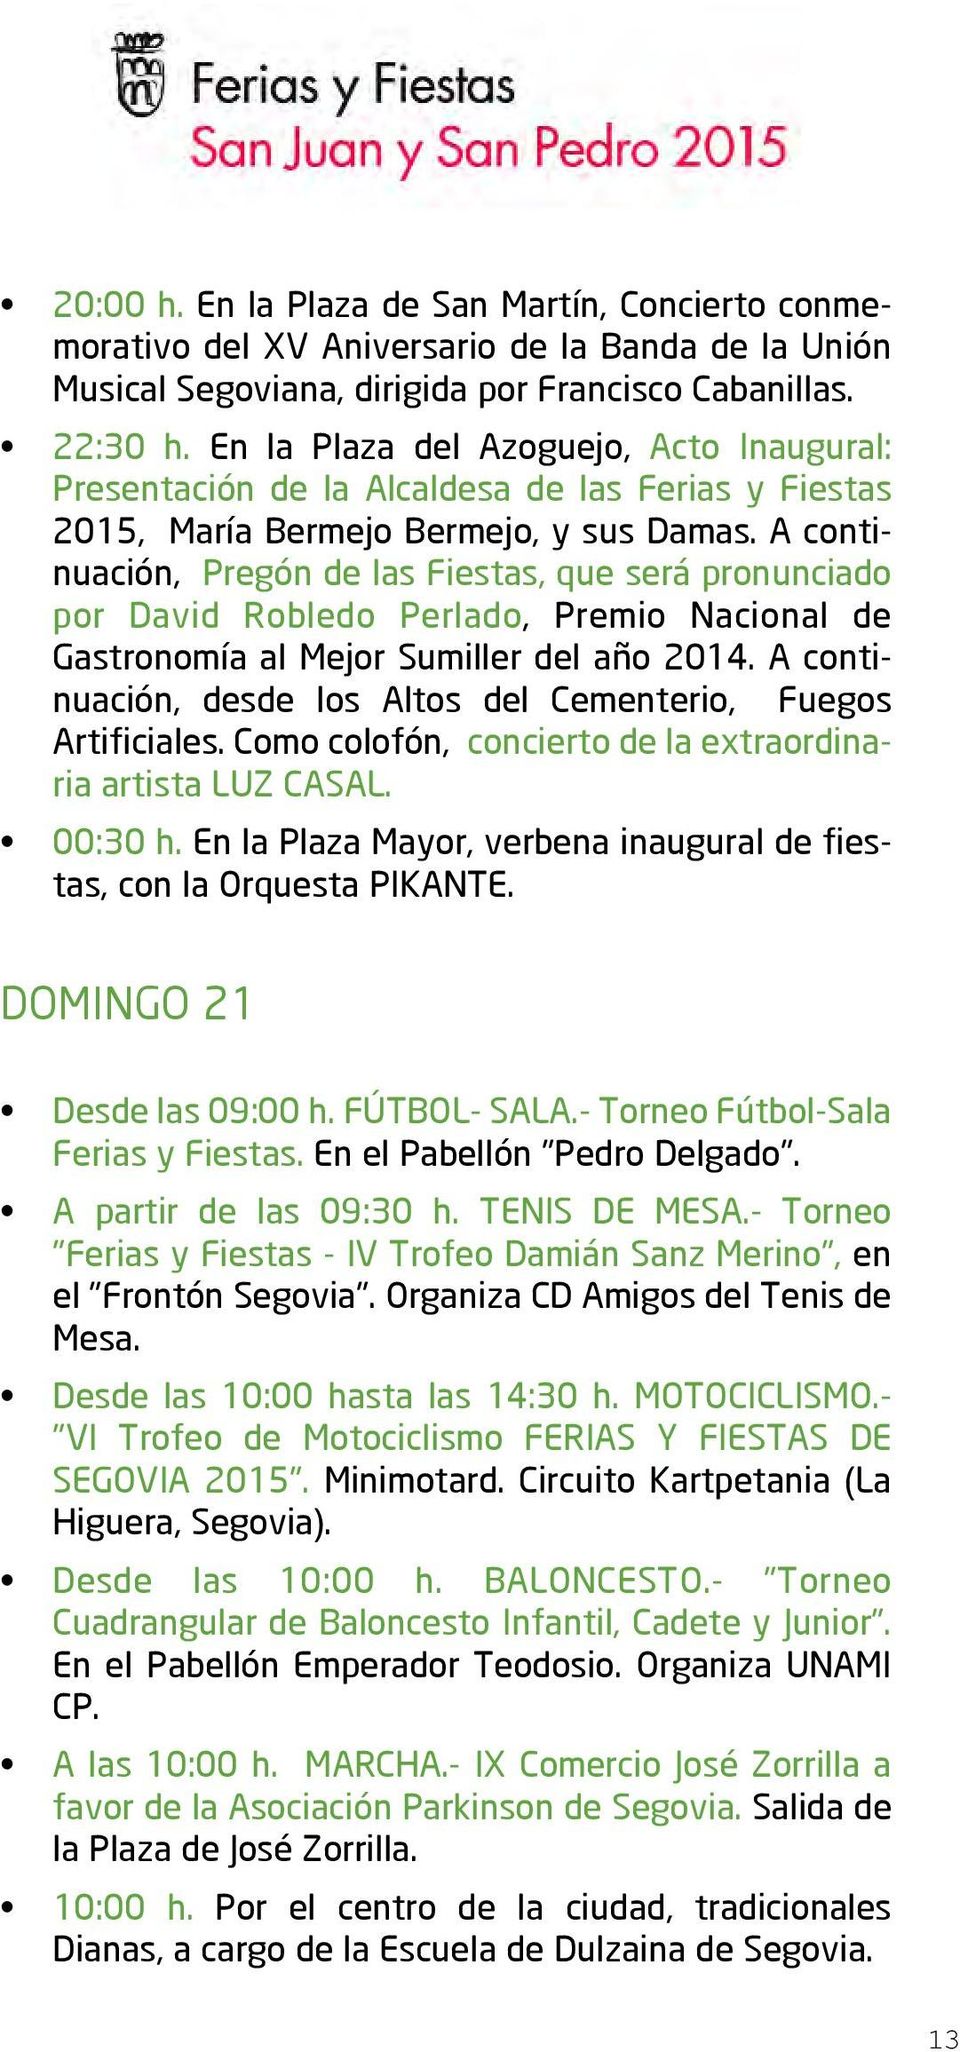 A continuación, Pregón de las Fiestas, que será pronunciado por David Robledo Perlado, Premio Nacional de Gastronomía al Mejor Sumiller del año 2014.